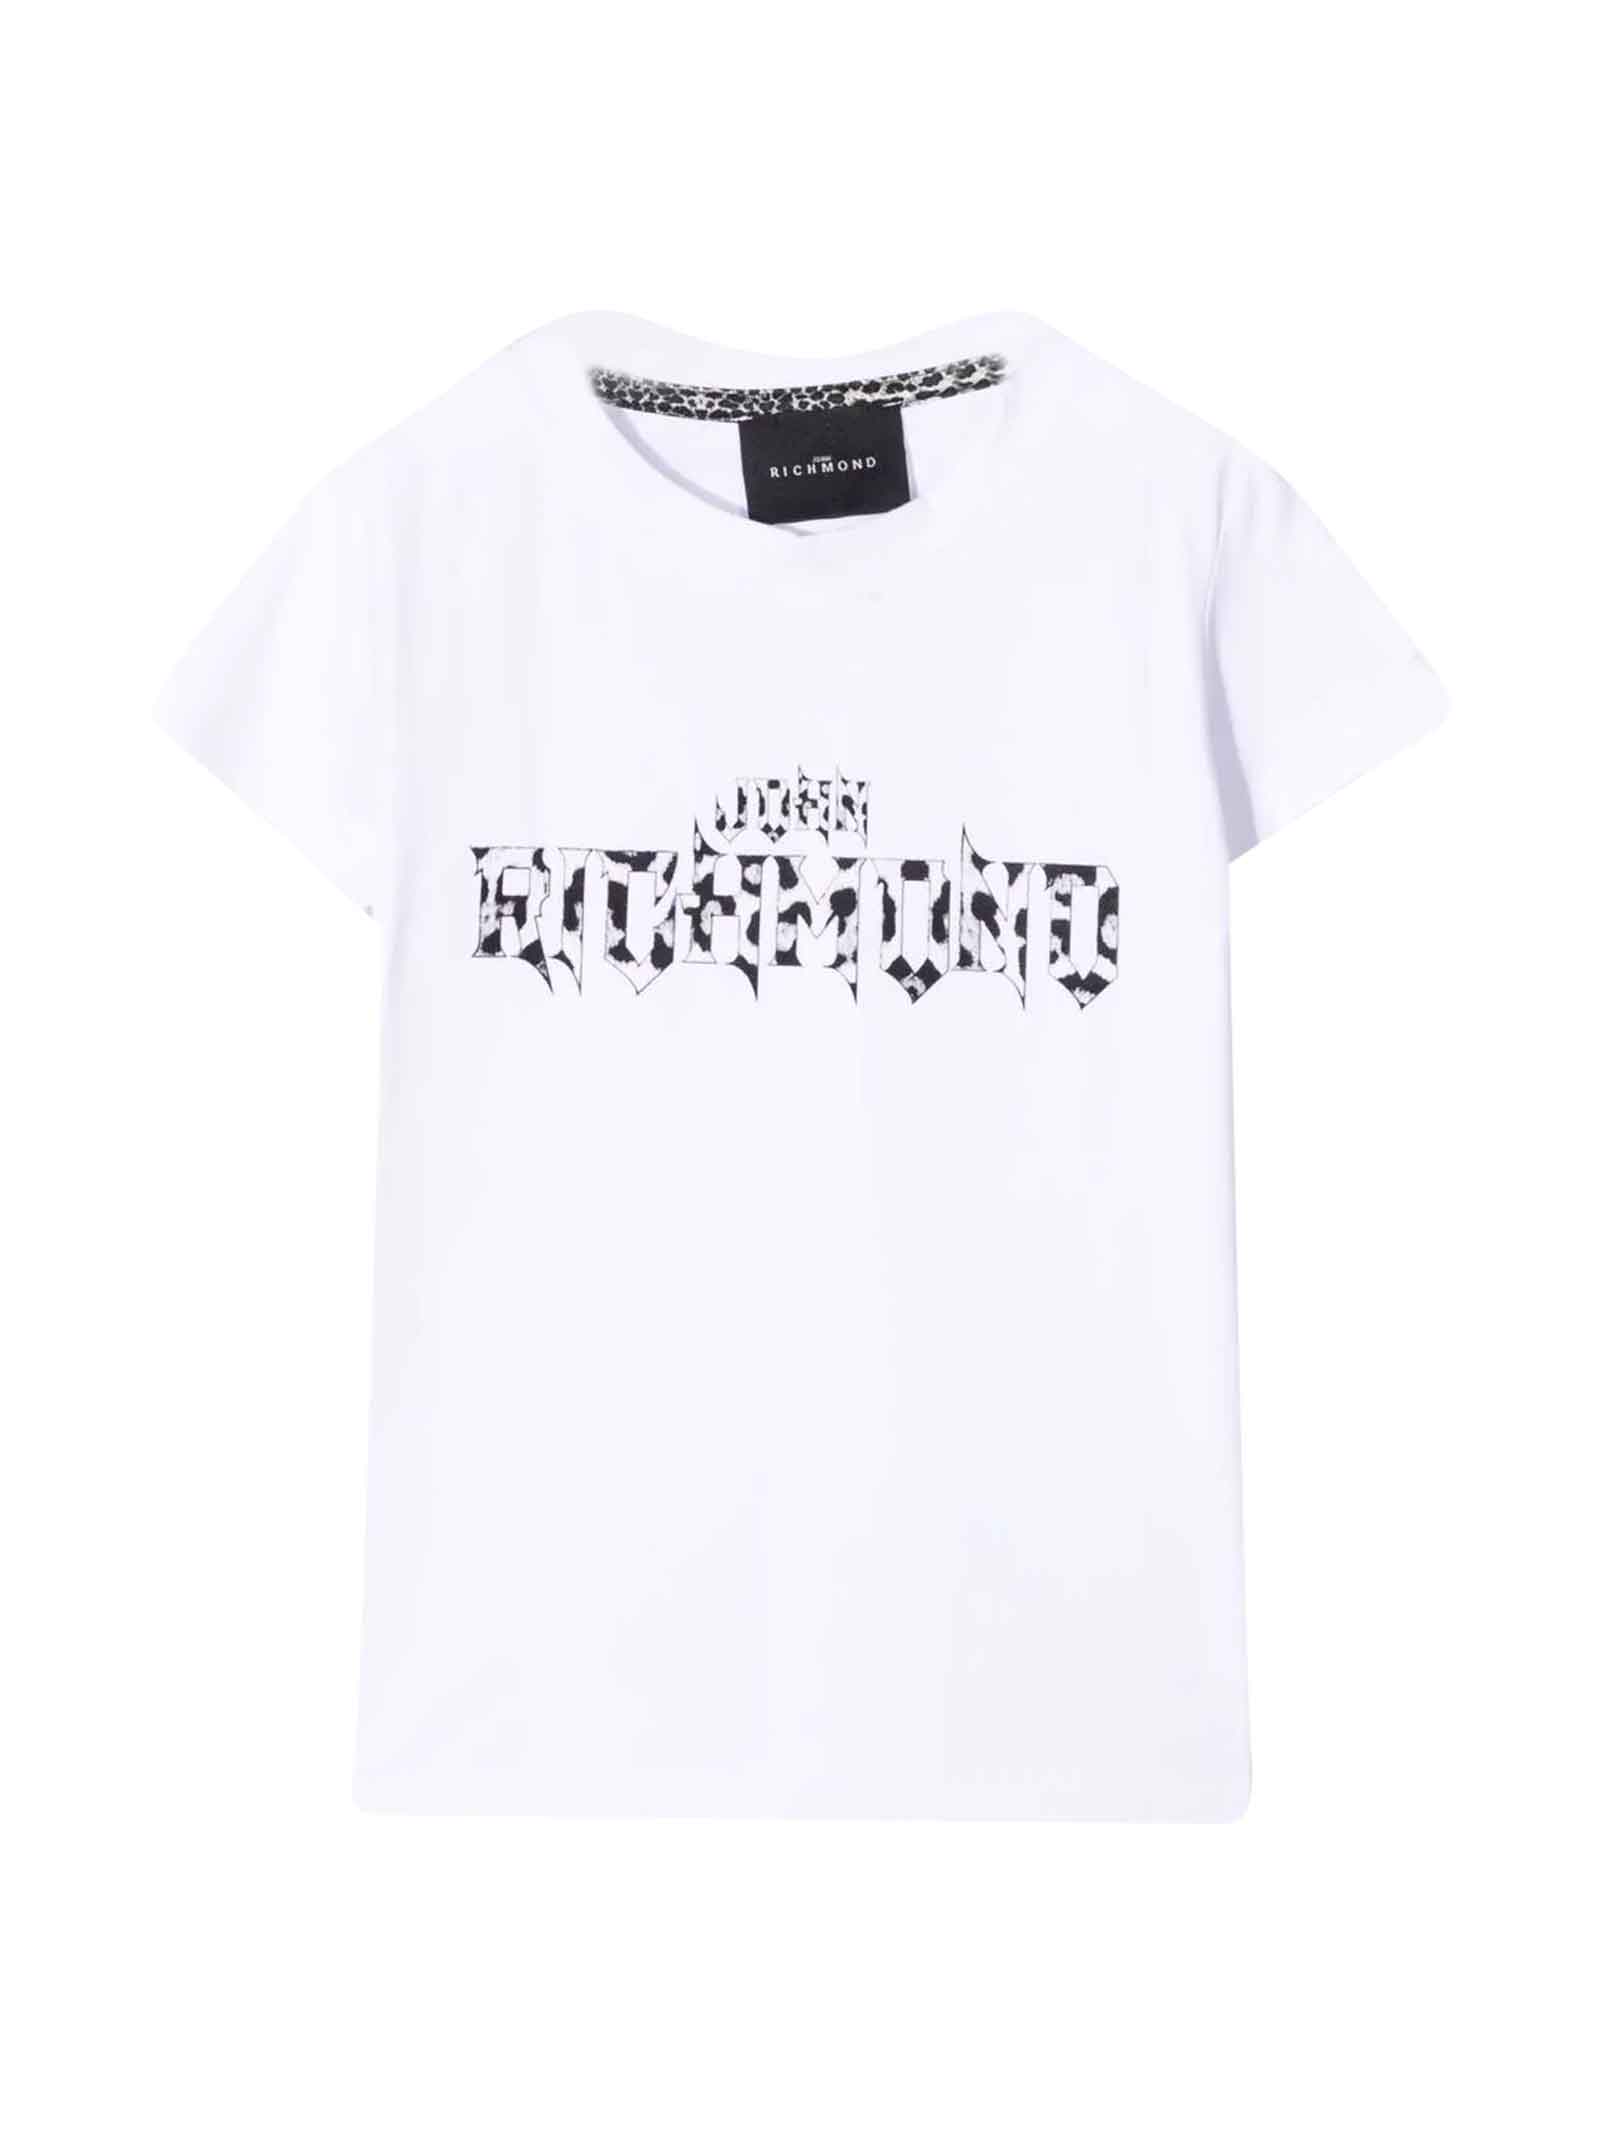 John Richmond White T-shirt With Black Print